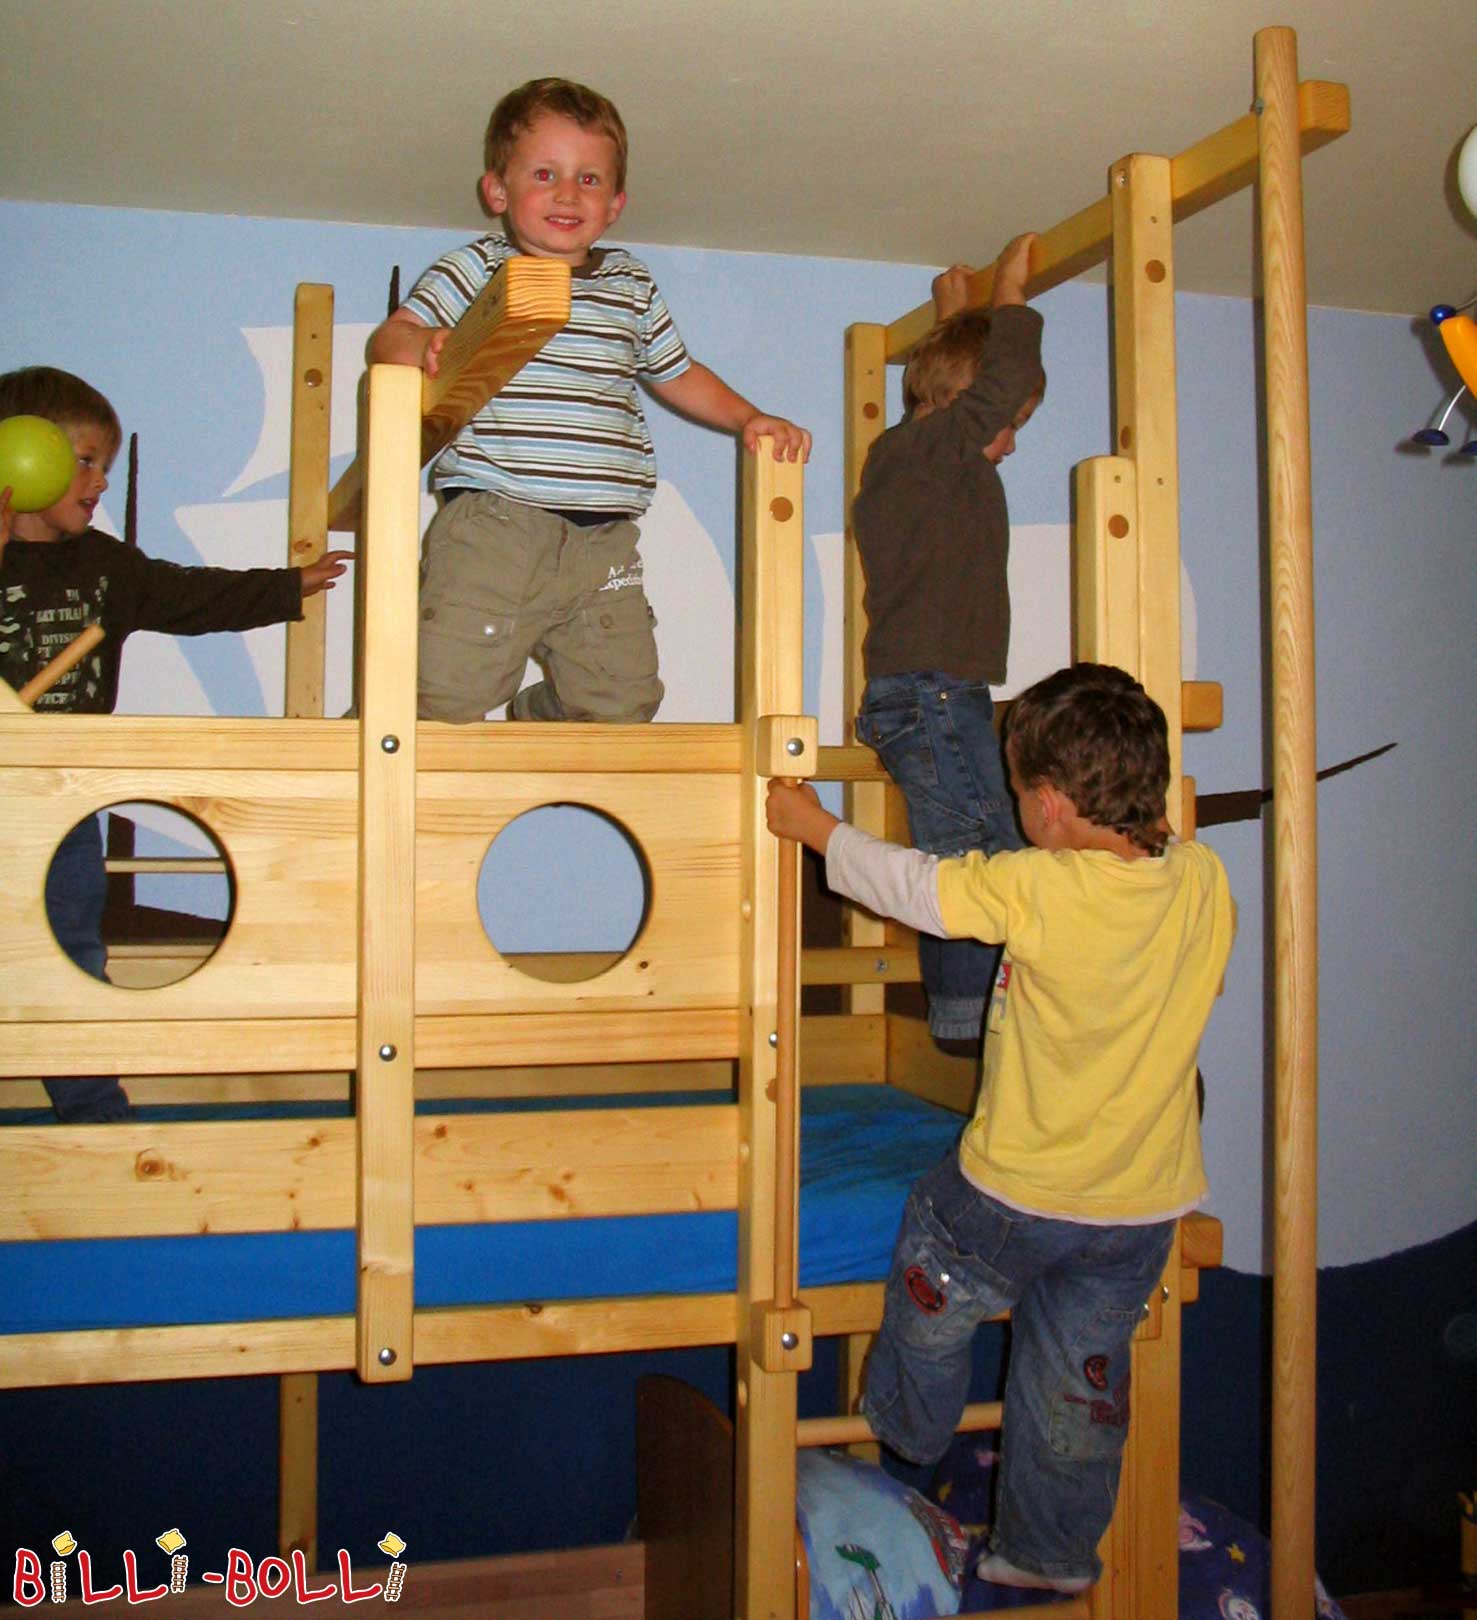 Hallo Billi-Bolli-Team, heute waren 5 wilde Piraten in unserem Kinderzimmer … (Zubehör)